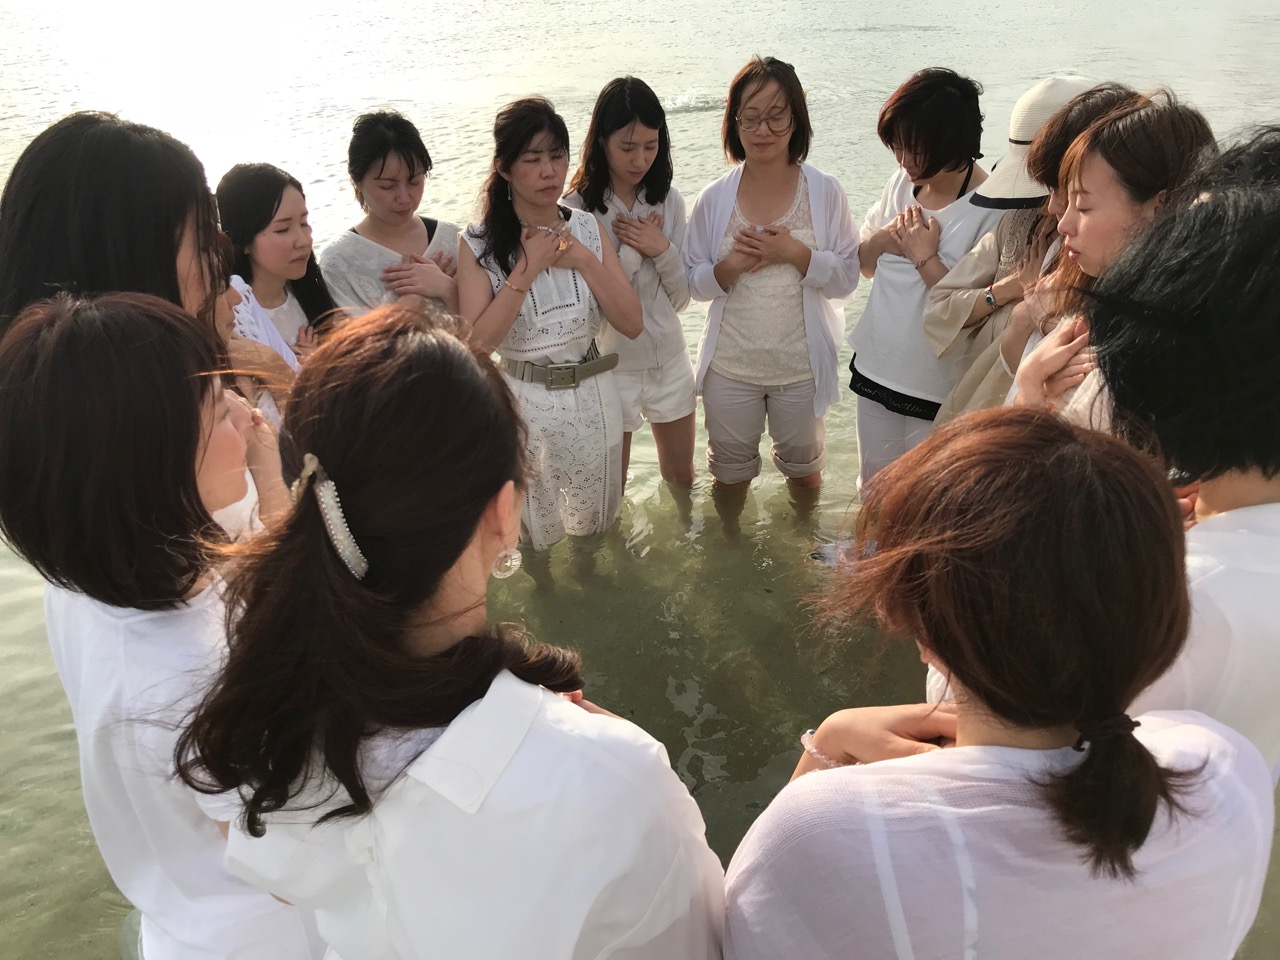 Releasing ceremony in the ocean